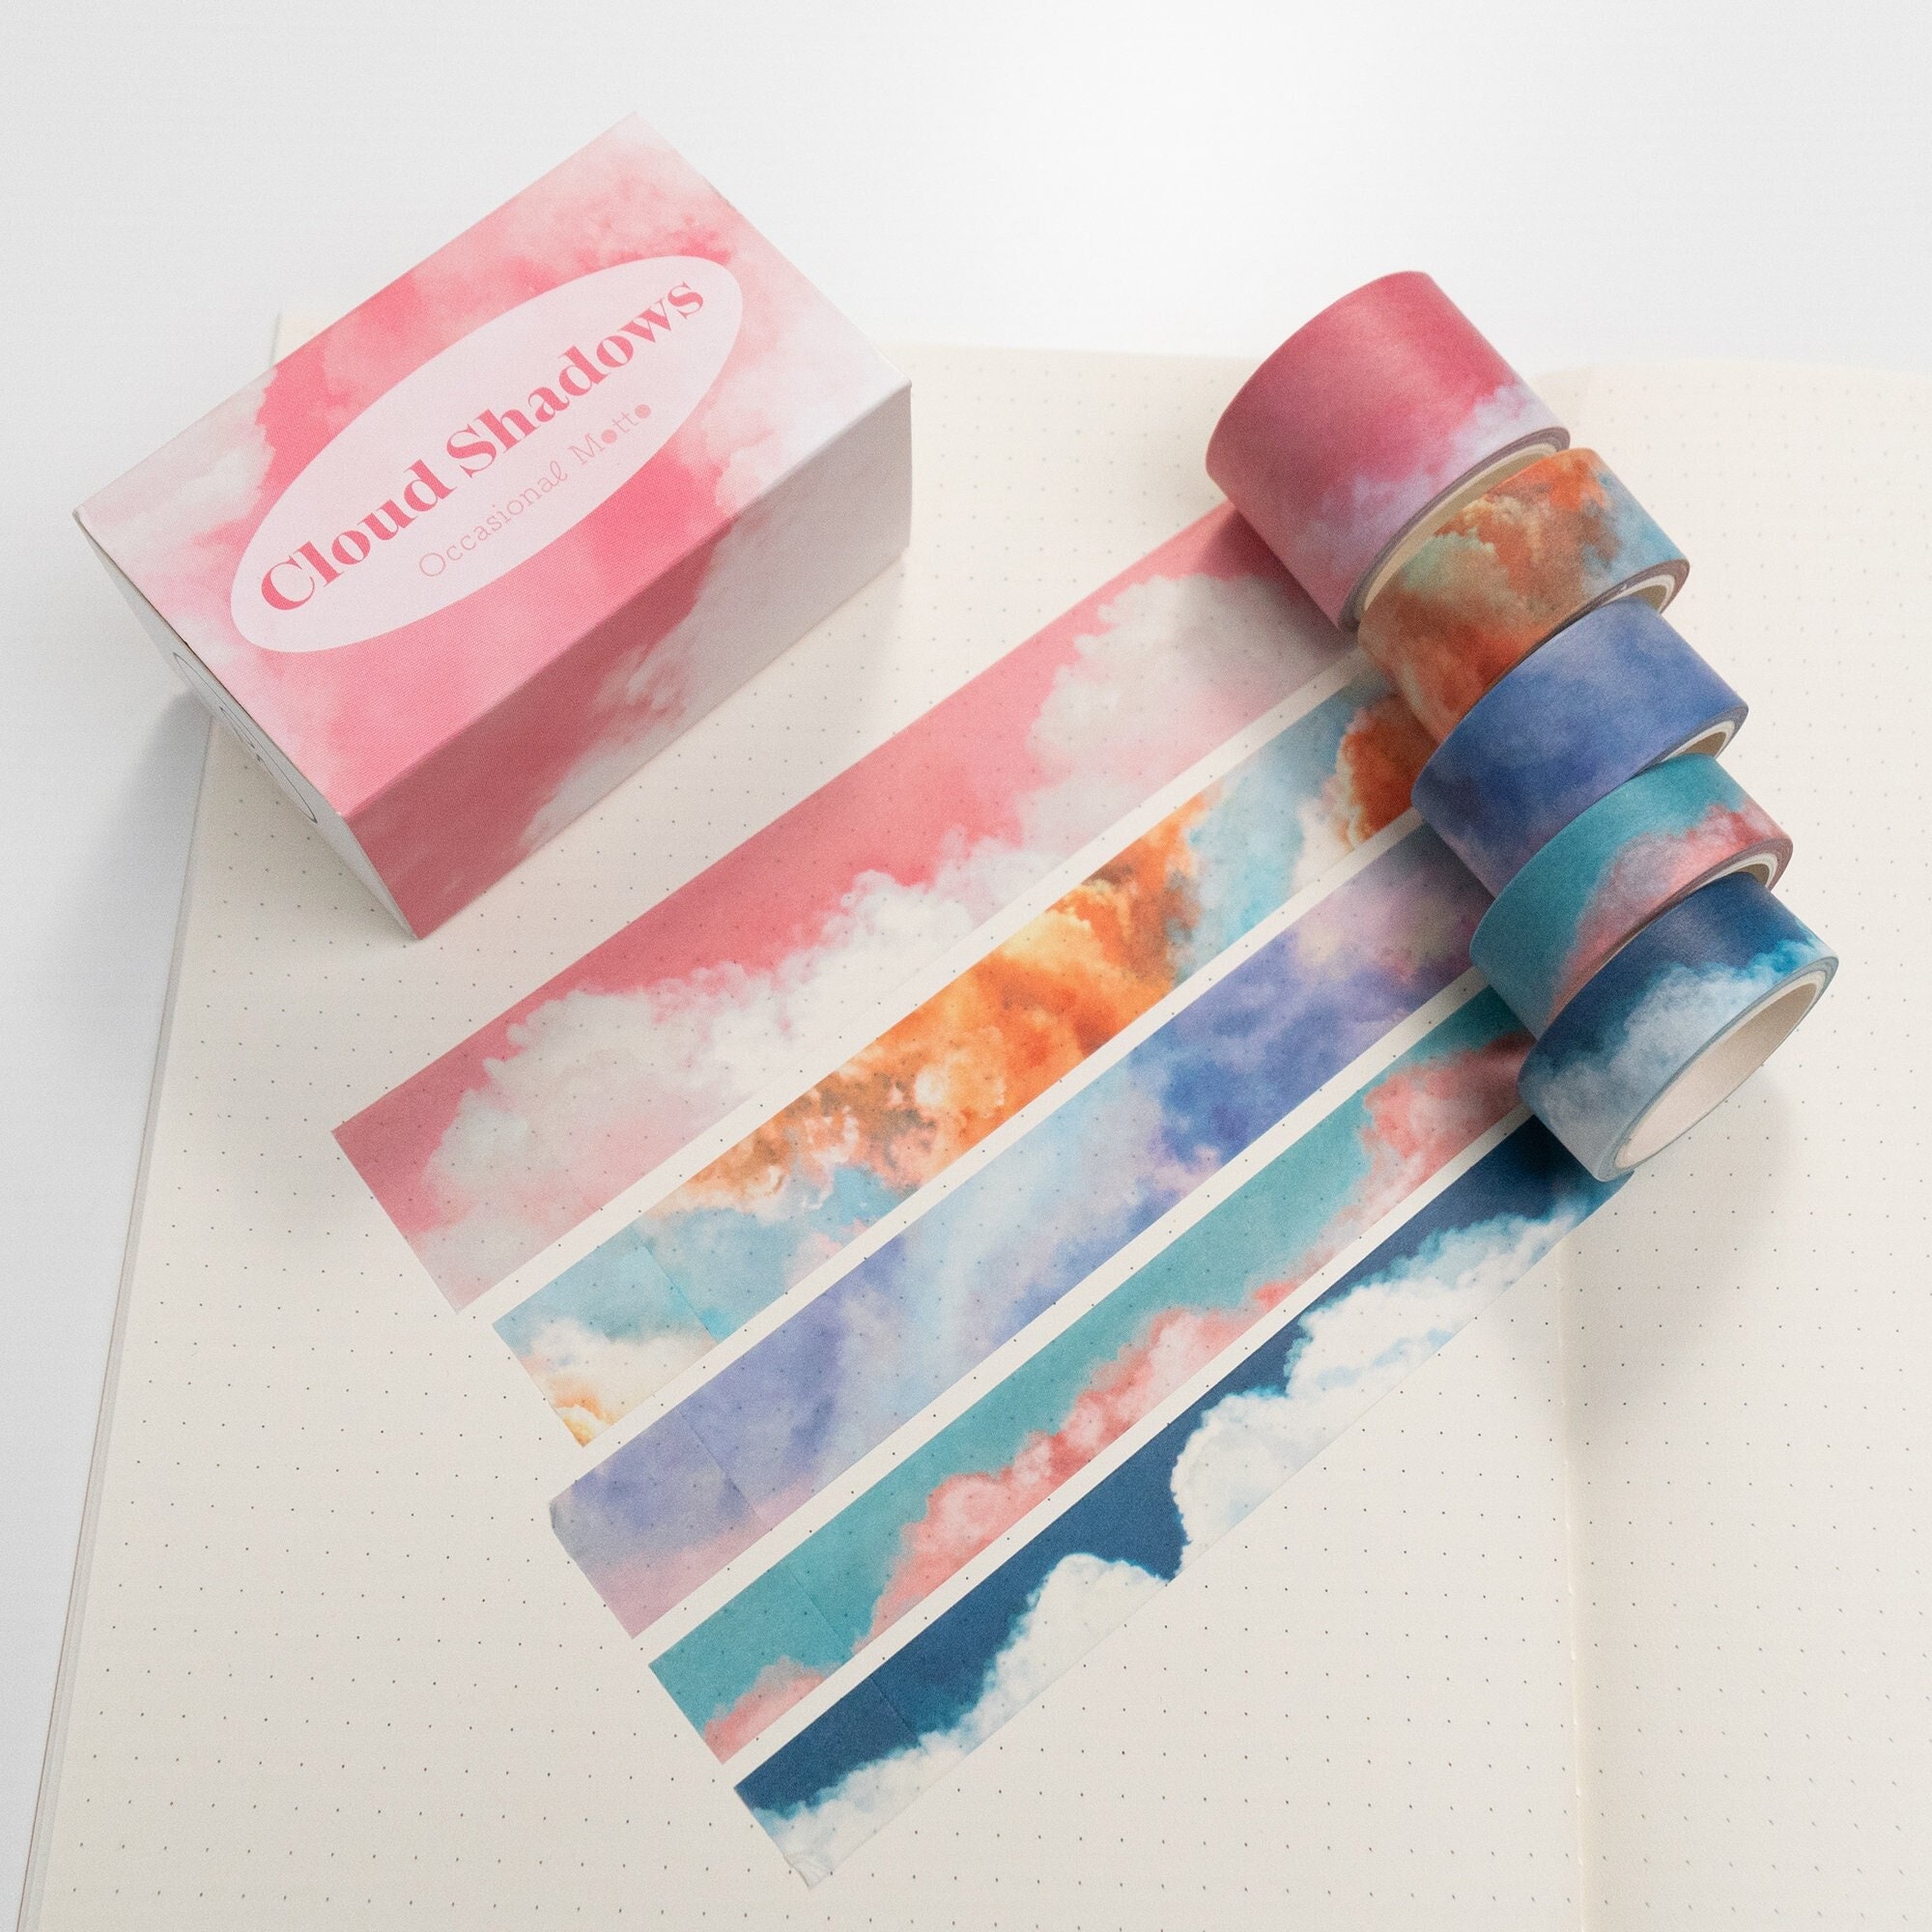 Printable Vintage Washi Tape, Scrapbook Elements, Collage Sheet, Junk  Journaling, Journal Ephemera, Card Making, Paper Craft Supplies 